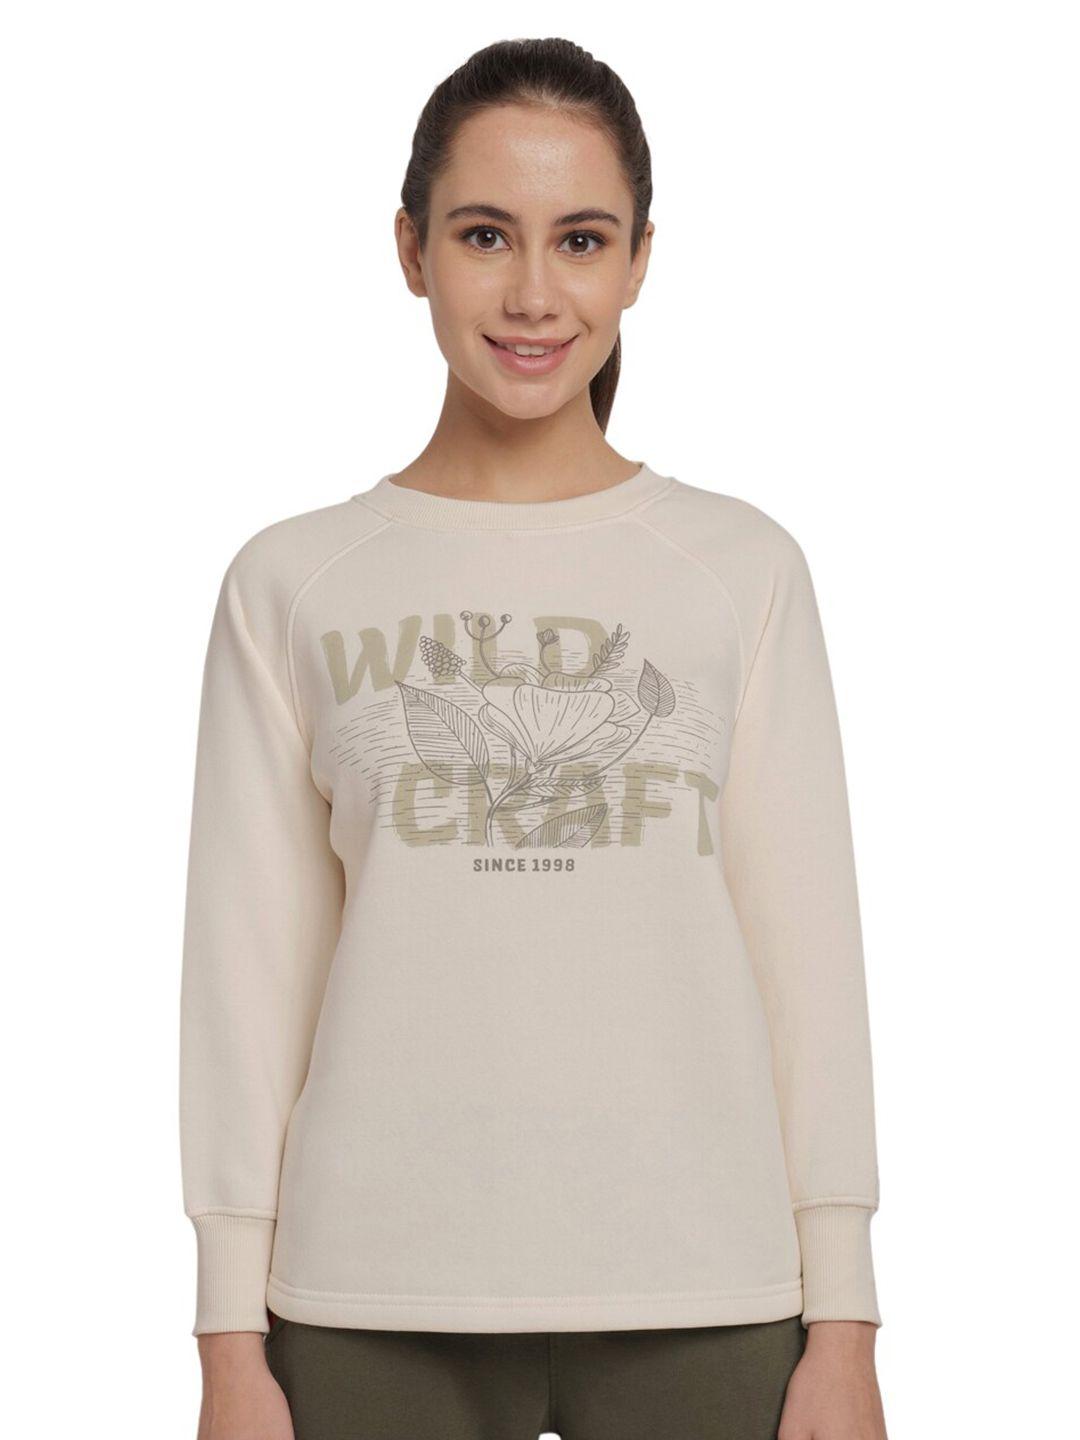 wildcraft-women-off-white-printed-cotton-sweatshirt